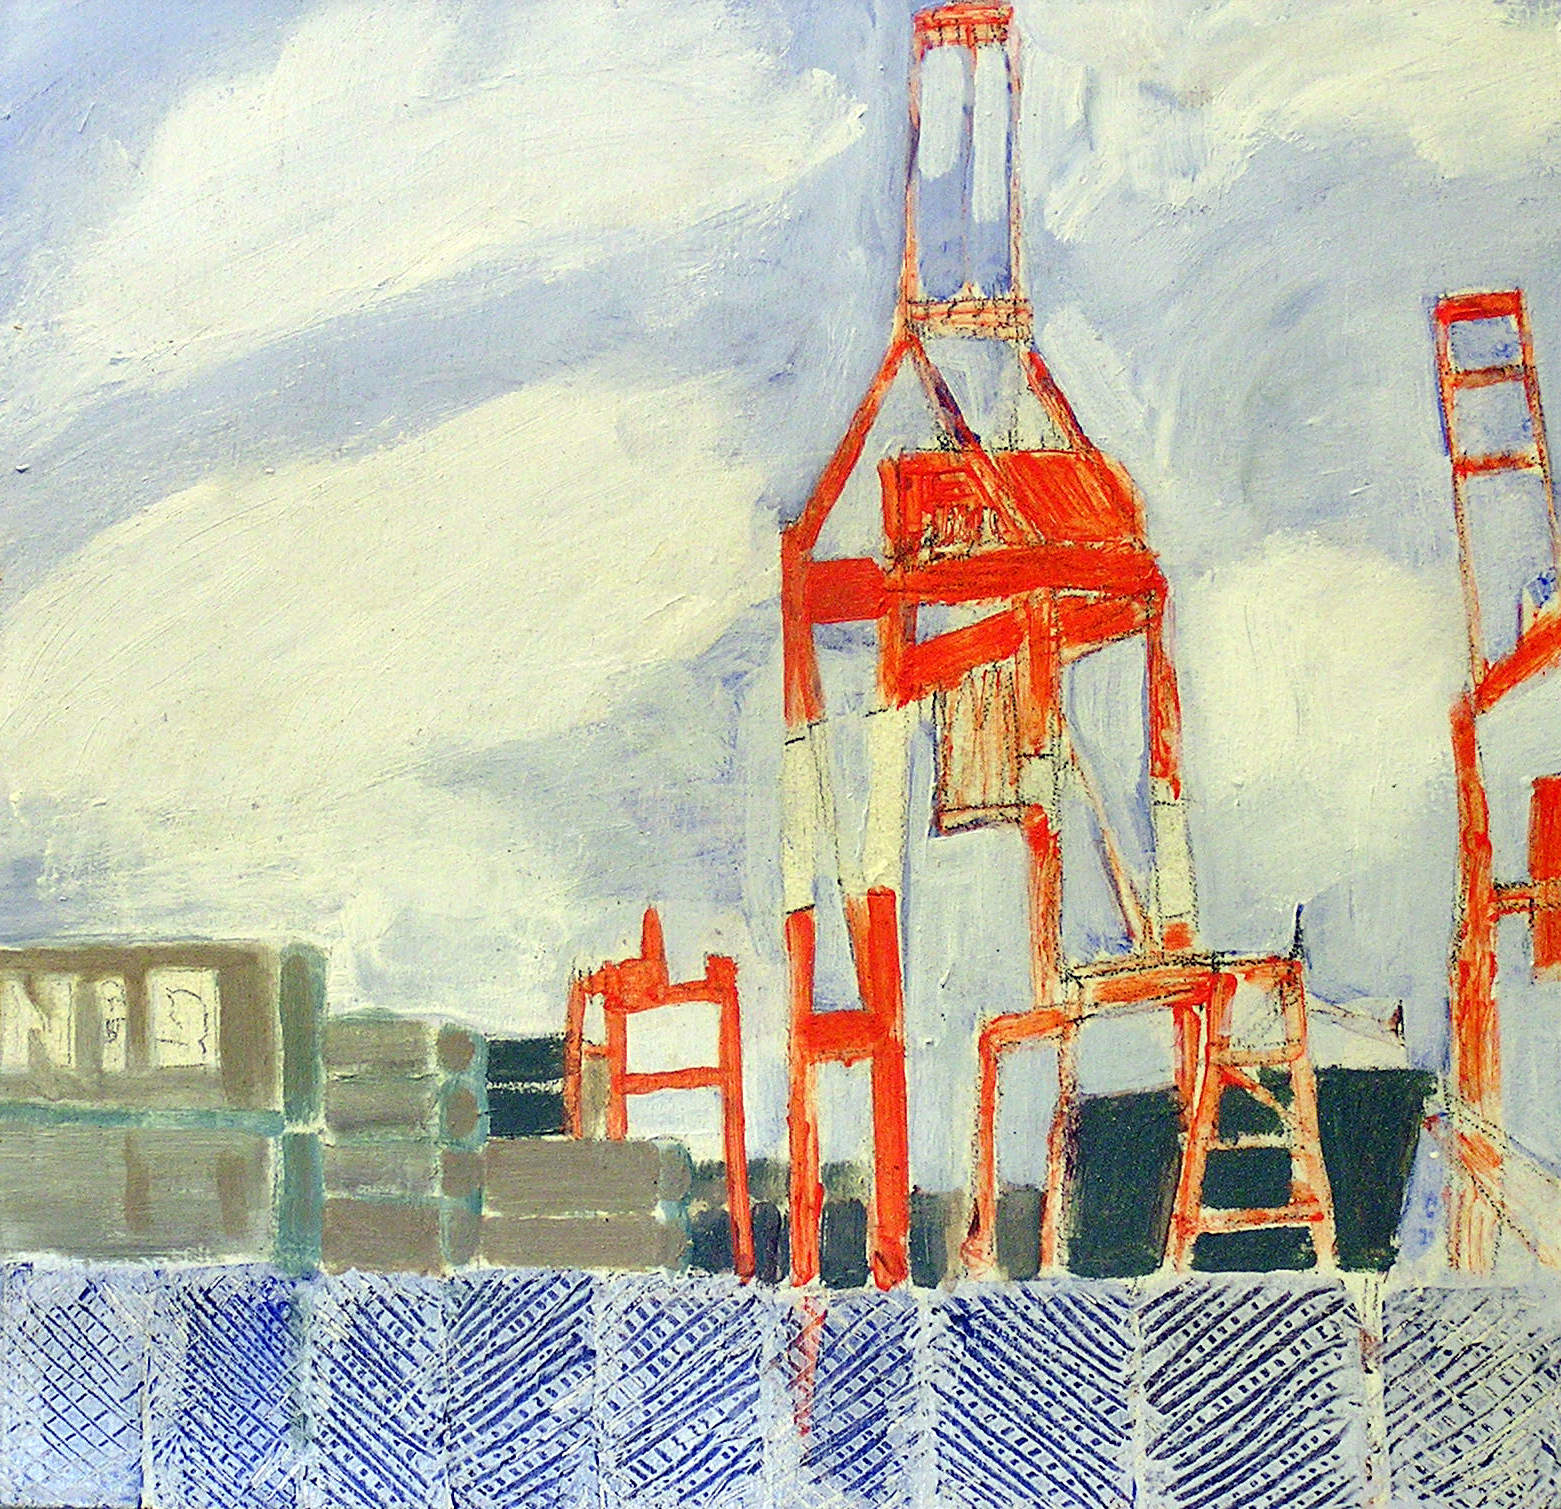 Halifax Harbour, Cranes